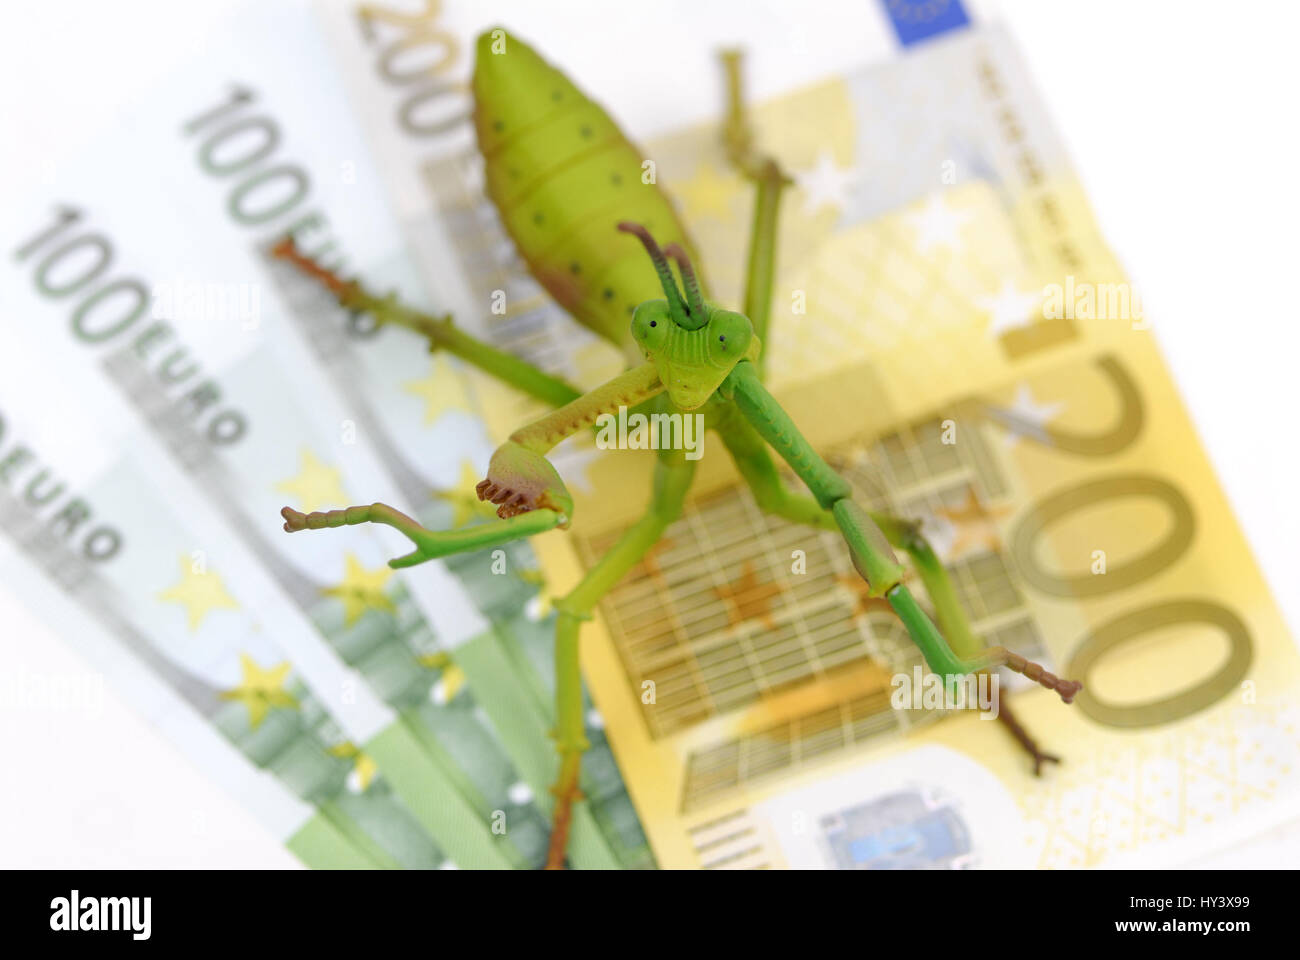 Grasshopper sulle banconote, hedge fund, Heuschrecke auf Geldscheinen, Hedge-Fonds Foto Stock